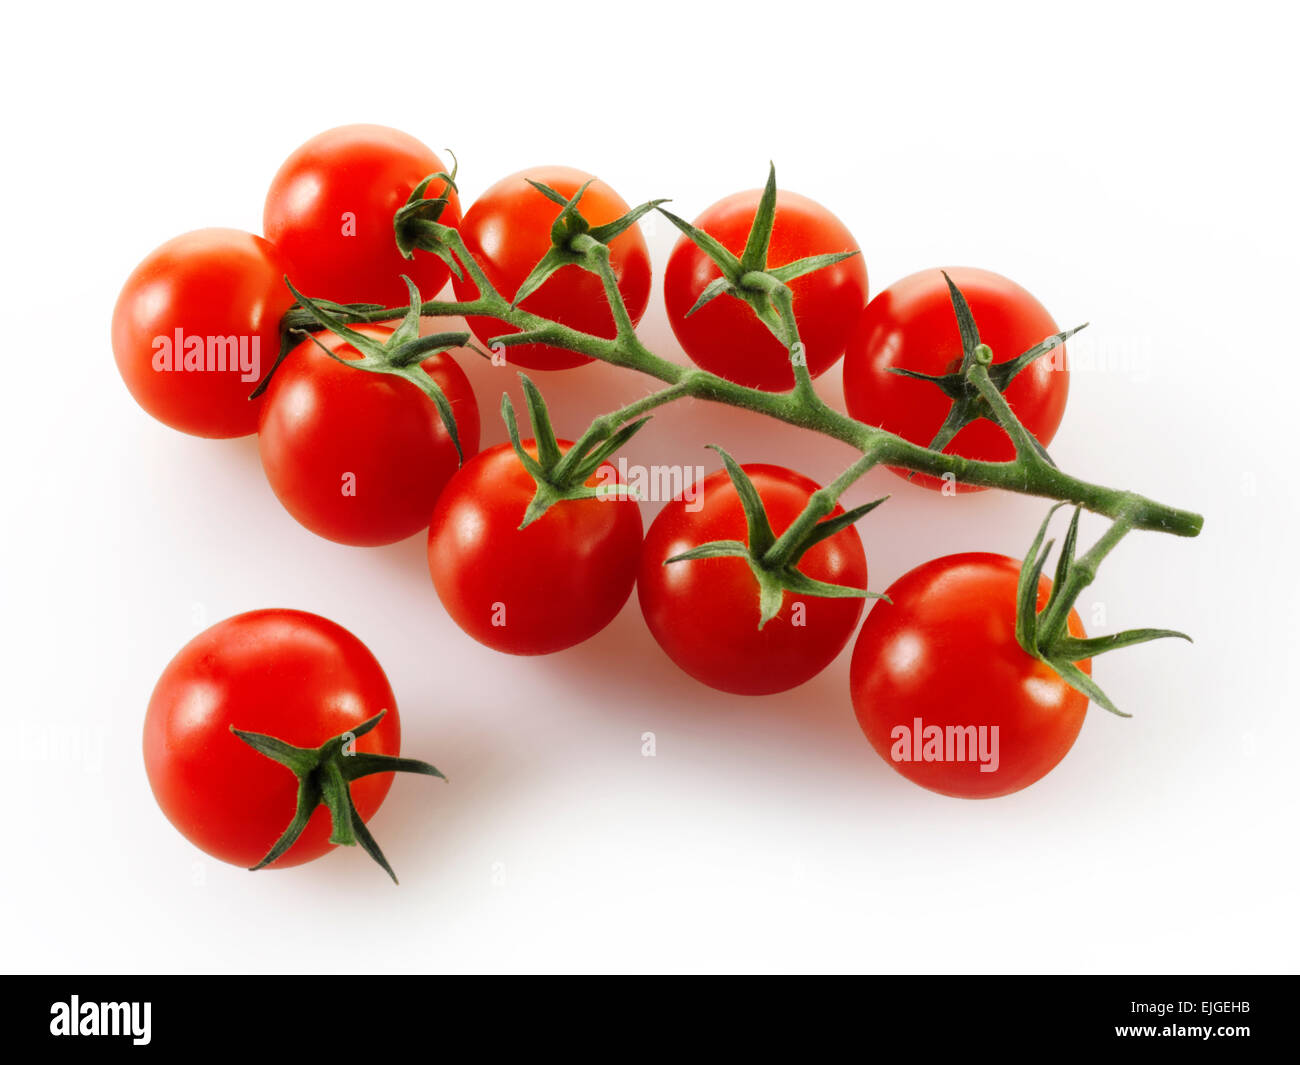 Vittoris pomodori a grappolo su sfondo bianco Foto Stock